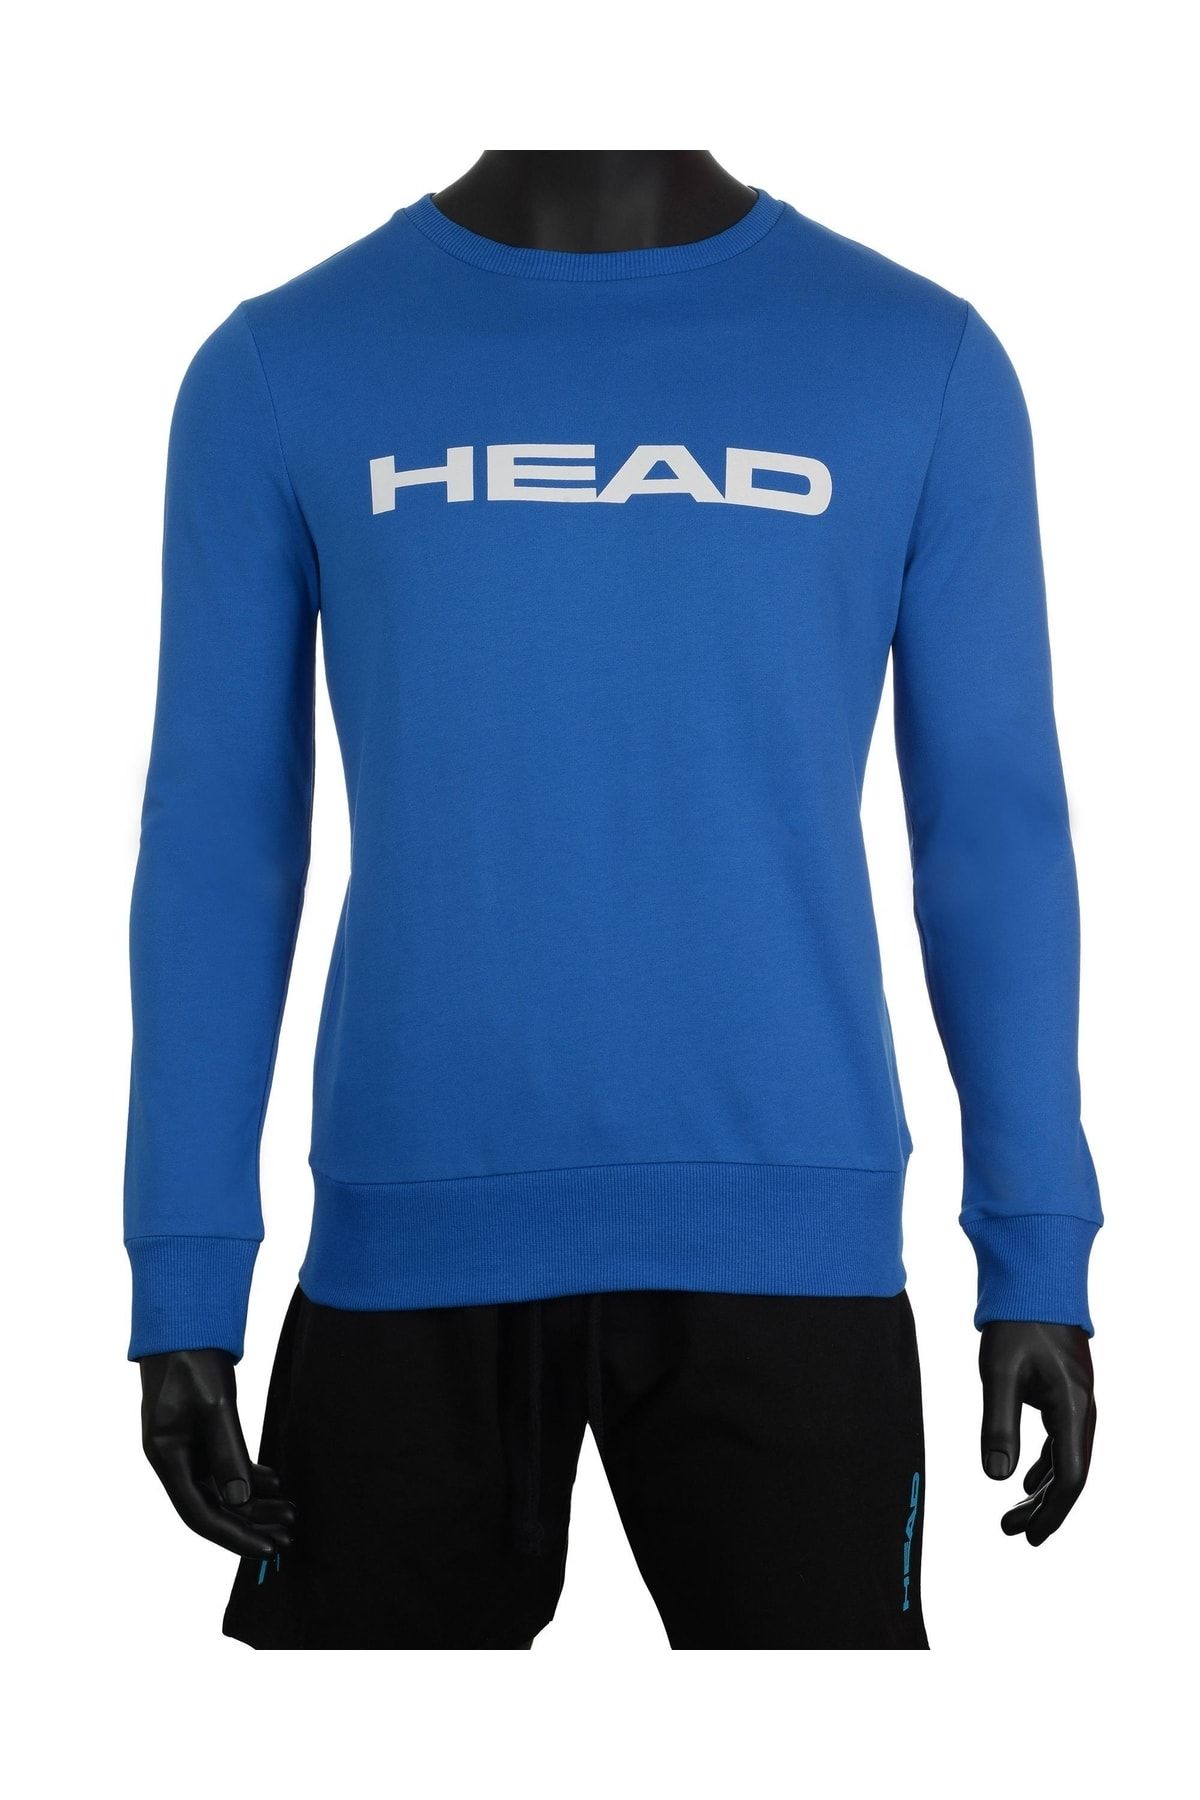 Head Erkek Mavi Logo Baskılı Mevsimlik Pamuklu Bisiklet Yaka Sporcu Basic Tenis Sweatshirt